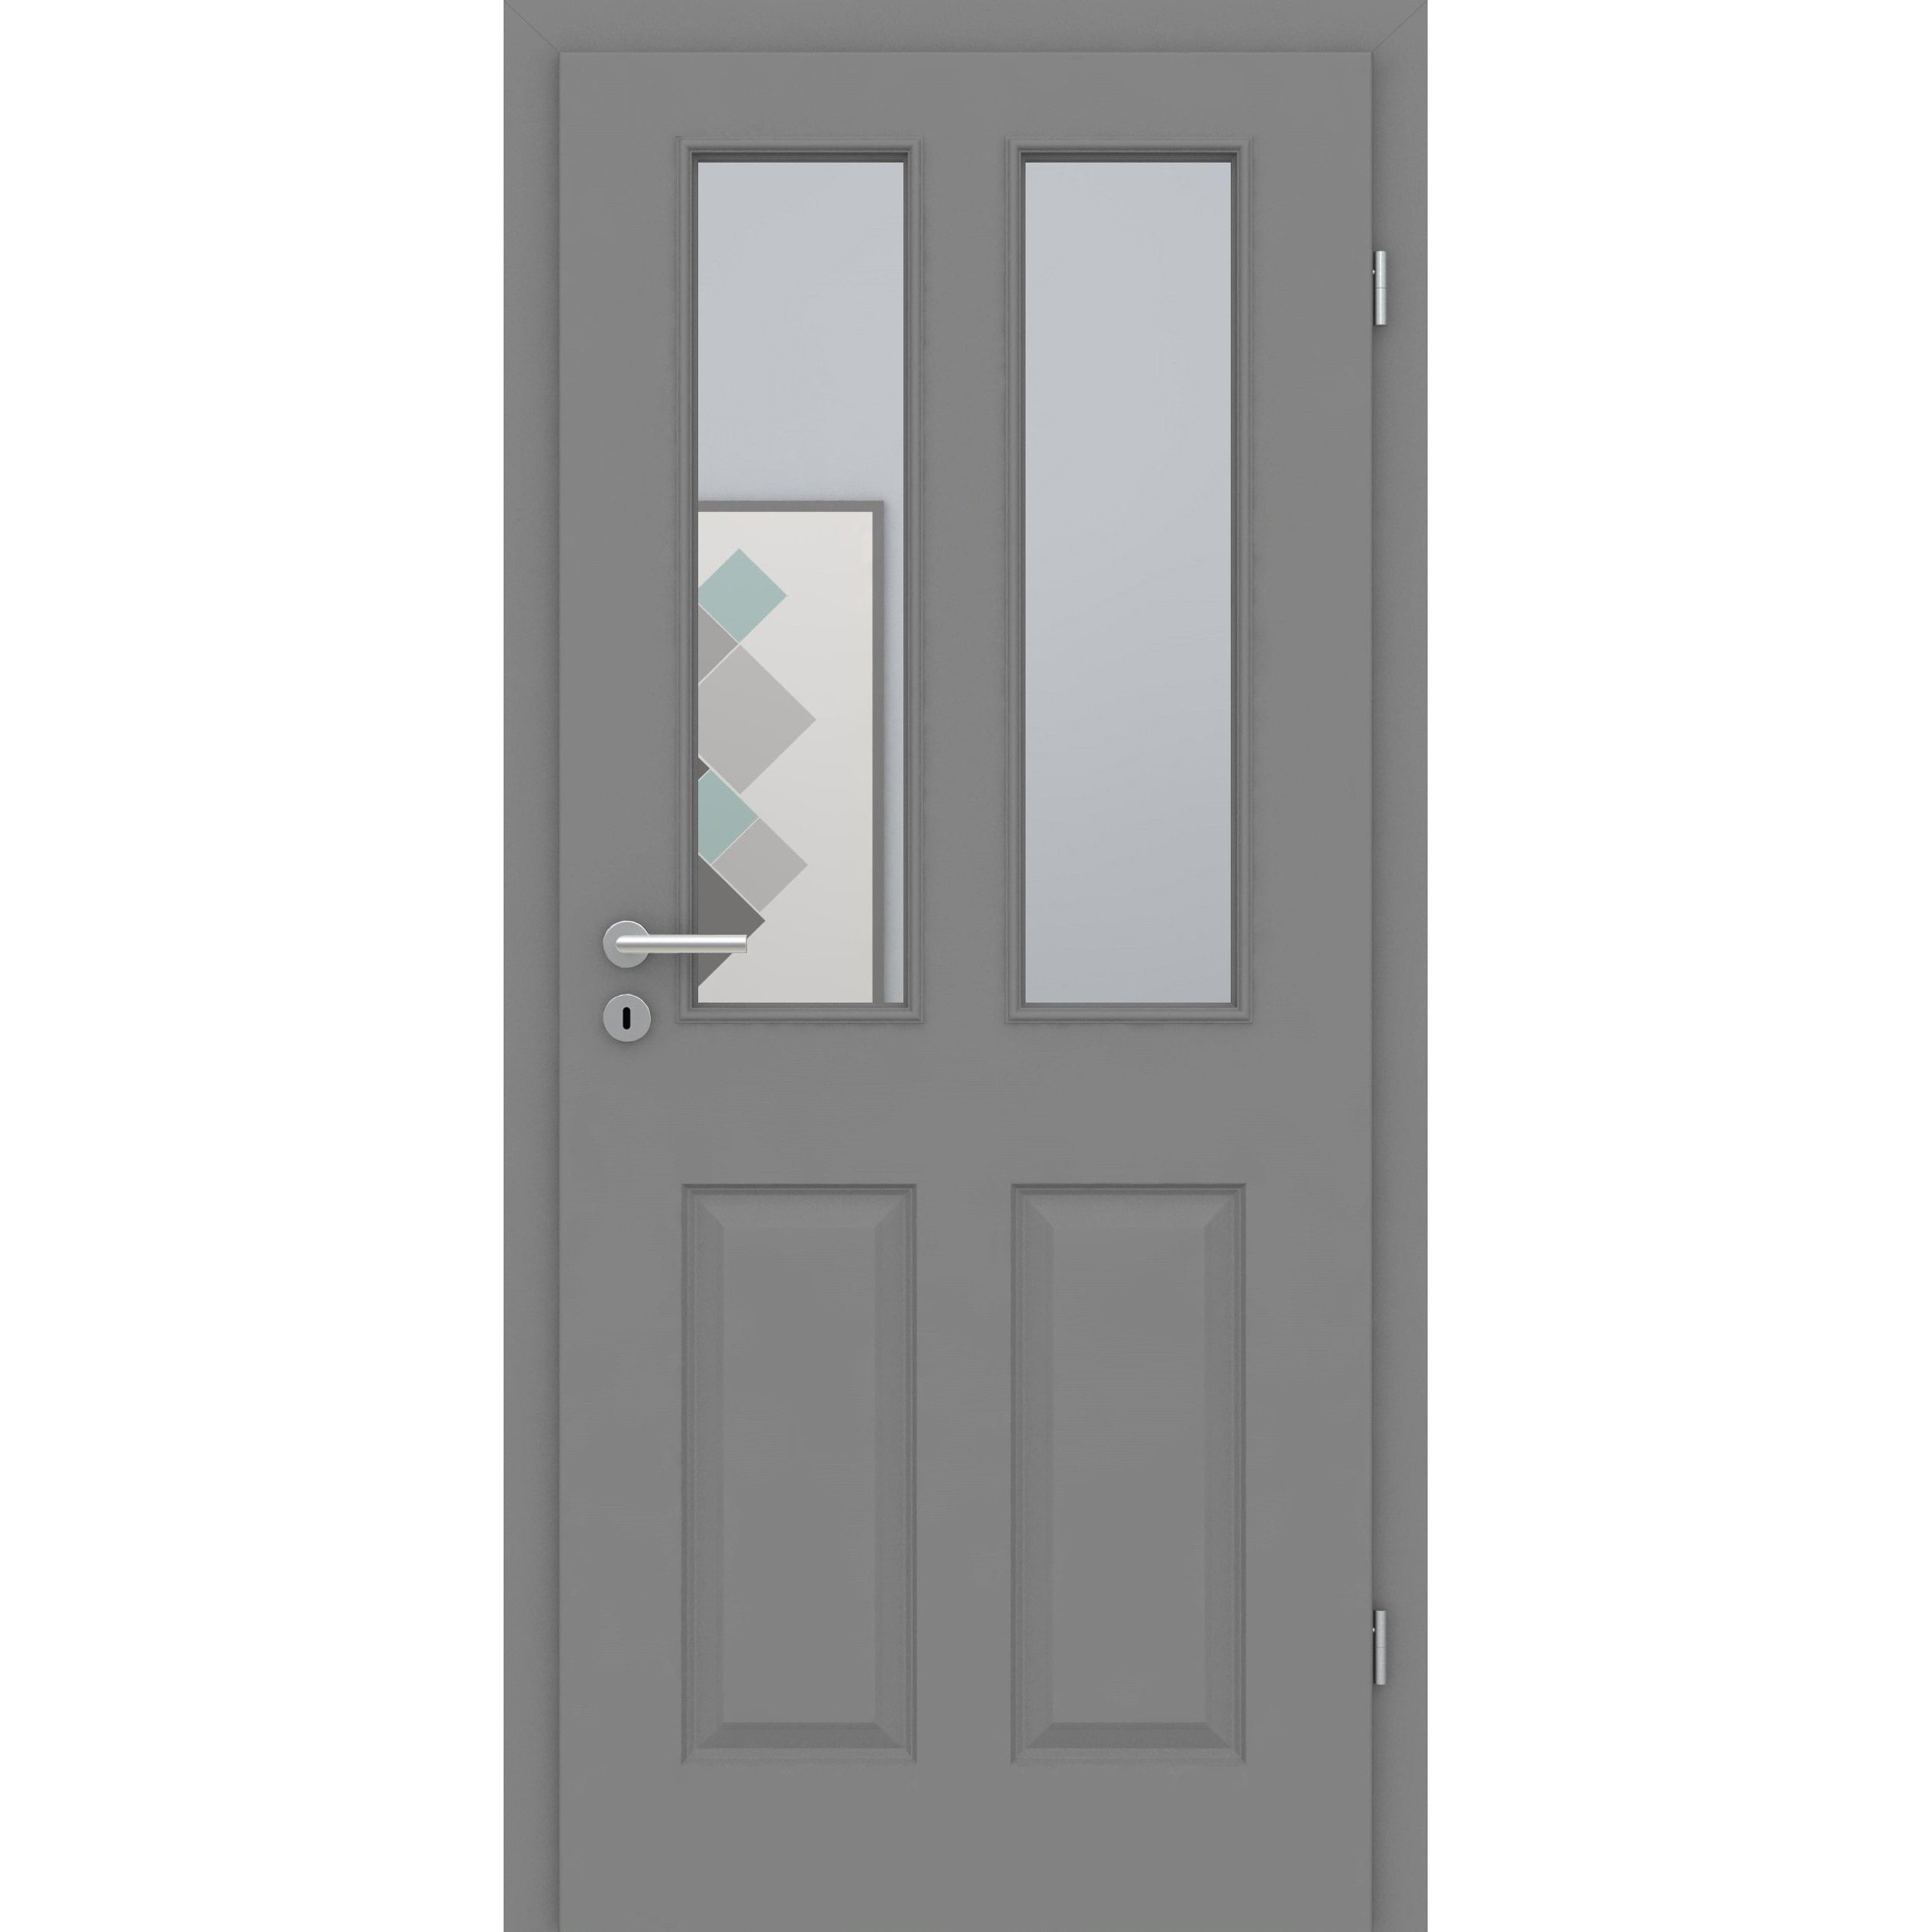 Zimmertür mit Lichtausschnitt grau 4 Kassetten Designkante - Modell Stiltür K47LA2